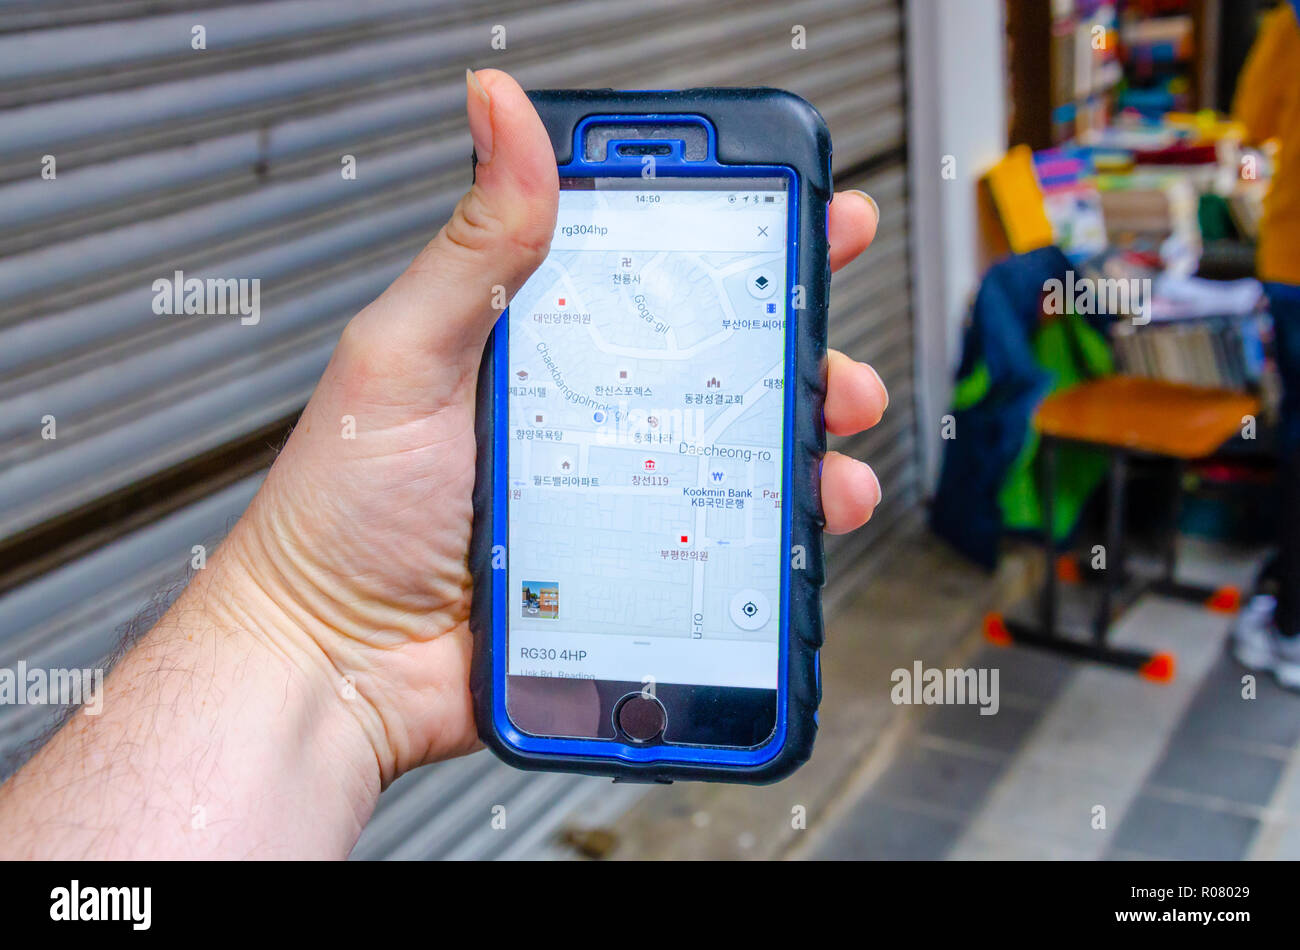 Un homme de main est titulaire d'un téléphone mobile iphone et utilise l'application Google Maps pour naviguer autour de la ville de Busan en Corée du Sud. Banque D'Images